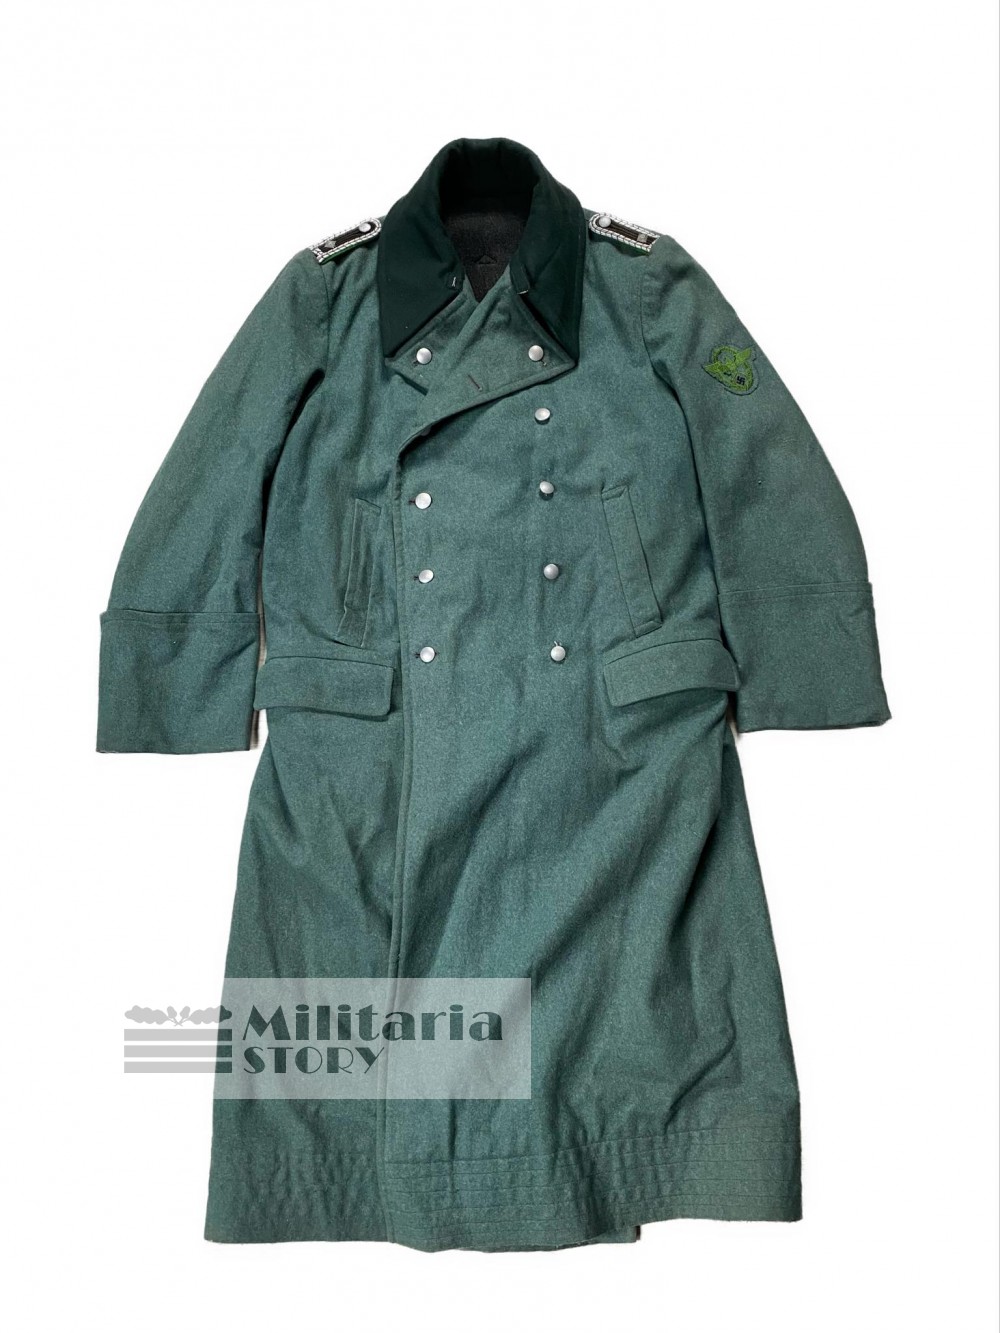 Polizei overcoat - Polizei overcoat: pre-war German Uniforms